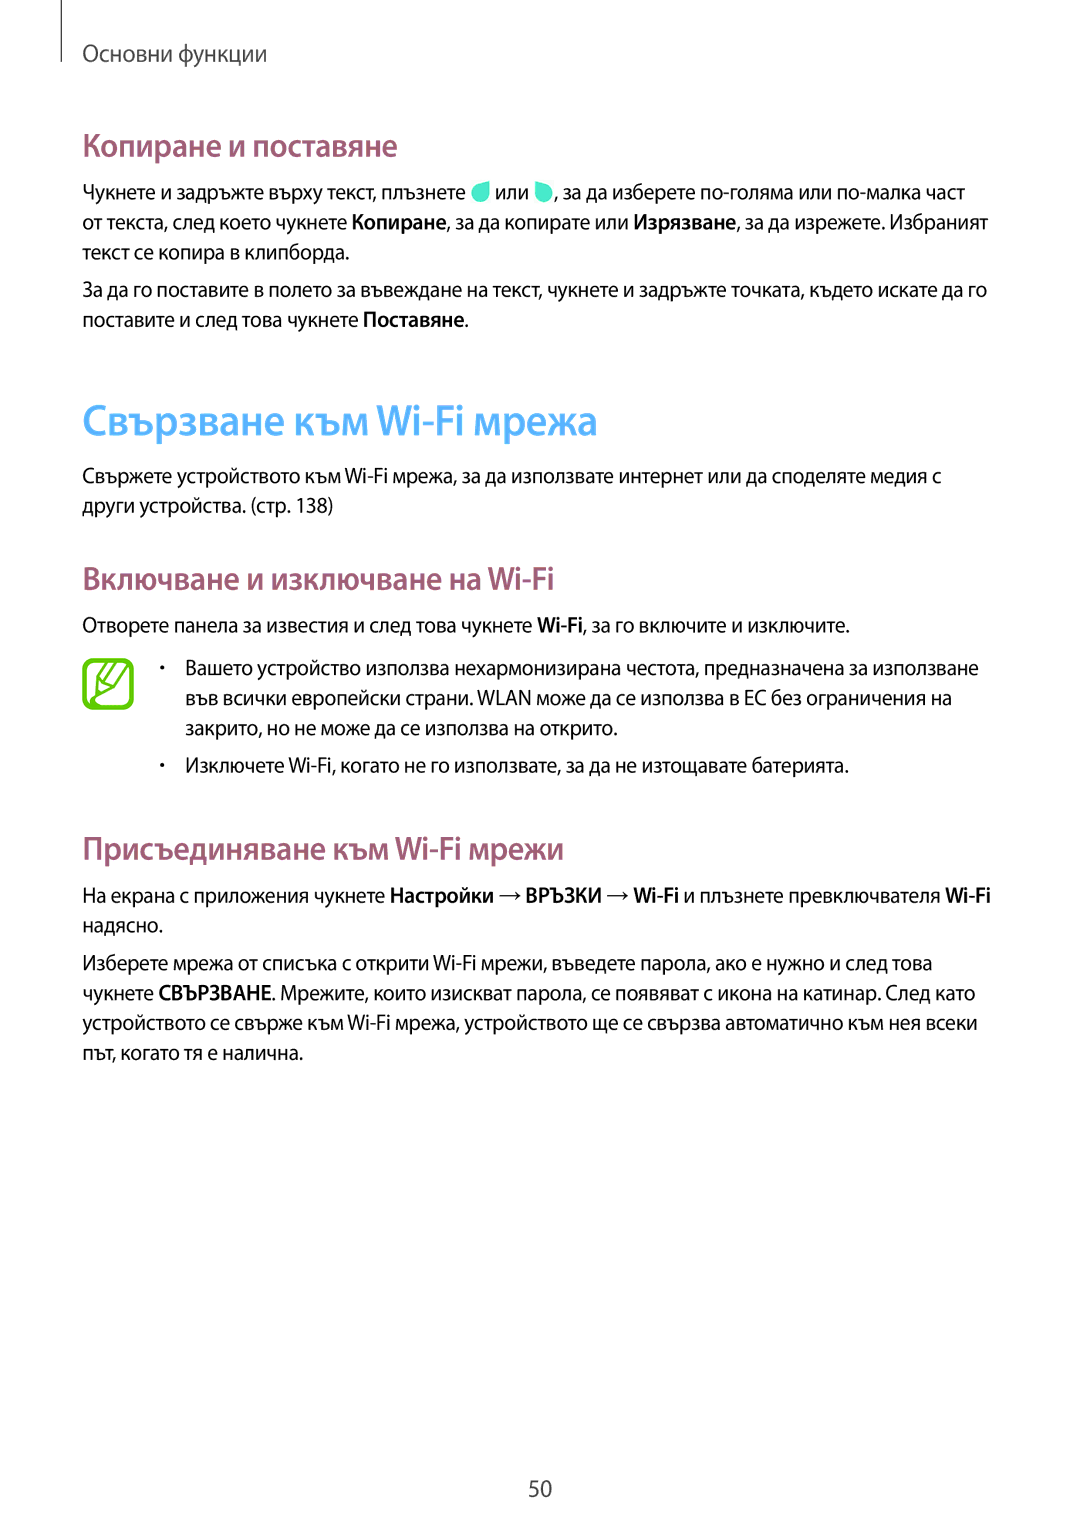 Samsung SM-N9005ZIEGBL, SM-N9005ZKEBGL Свързване към Wi-Fi мрежа, Копиране и поставяне, Включване и изключване на Wi-Fi 